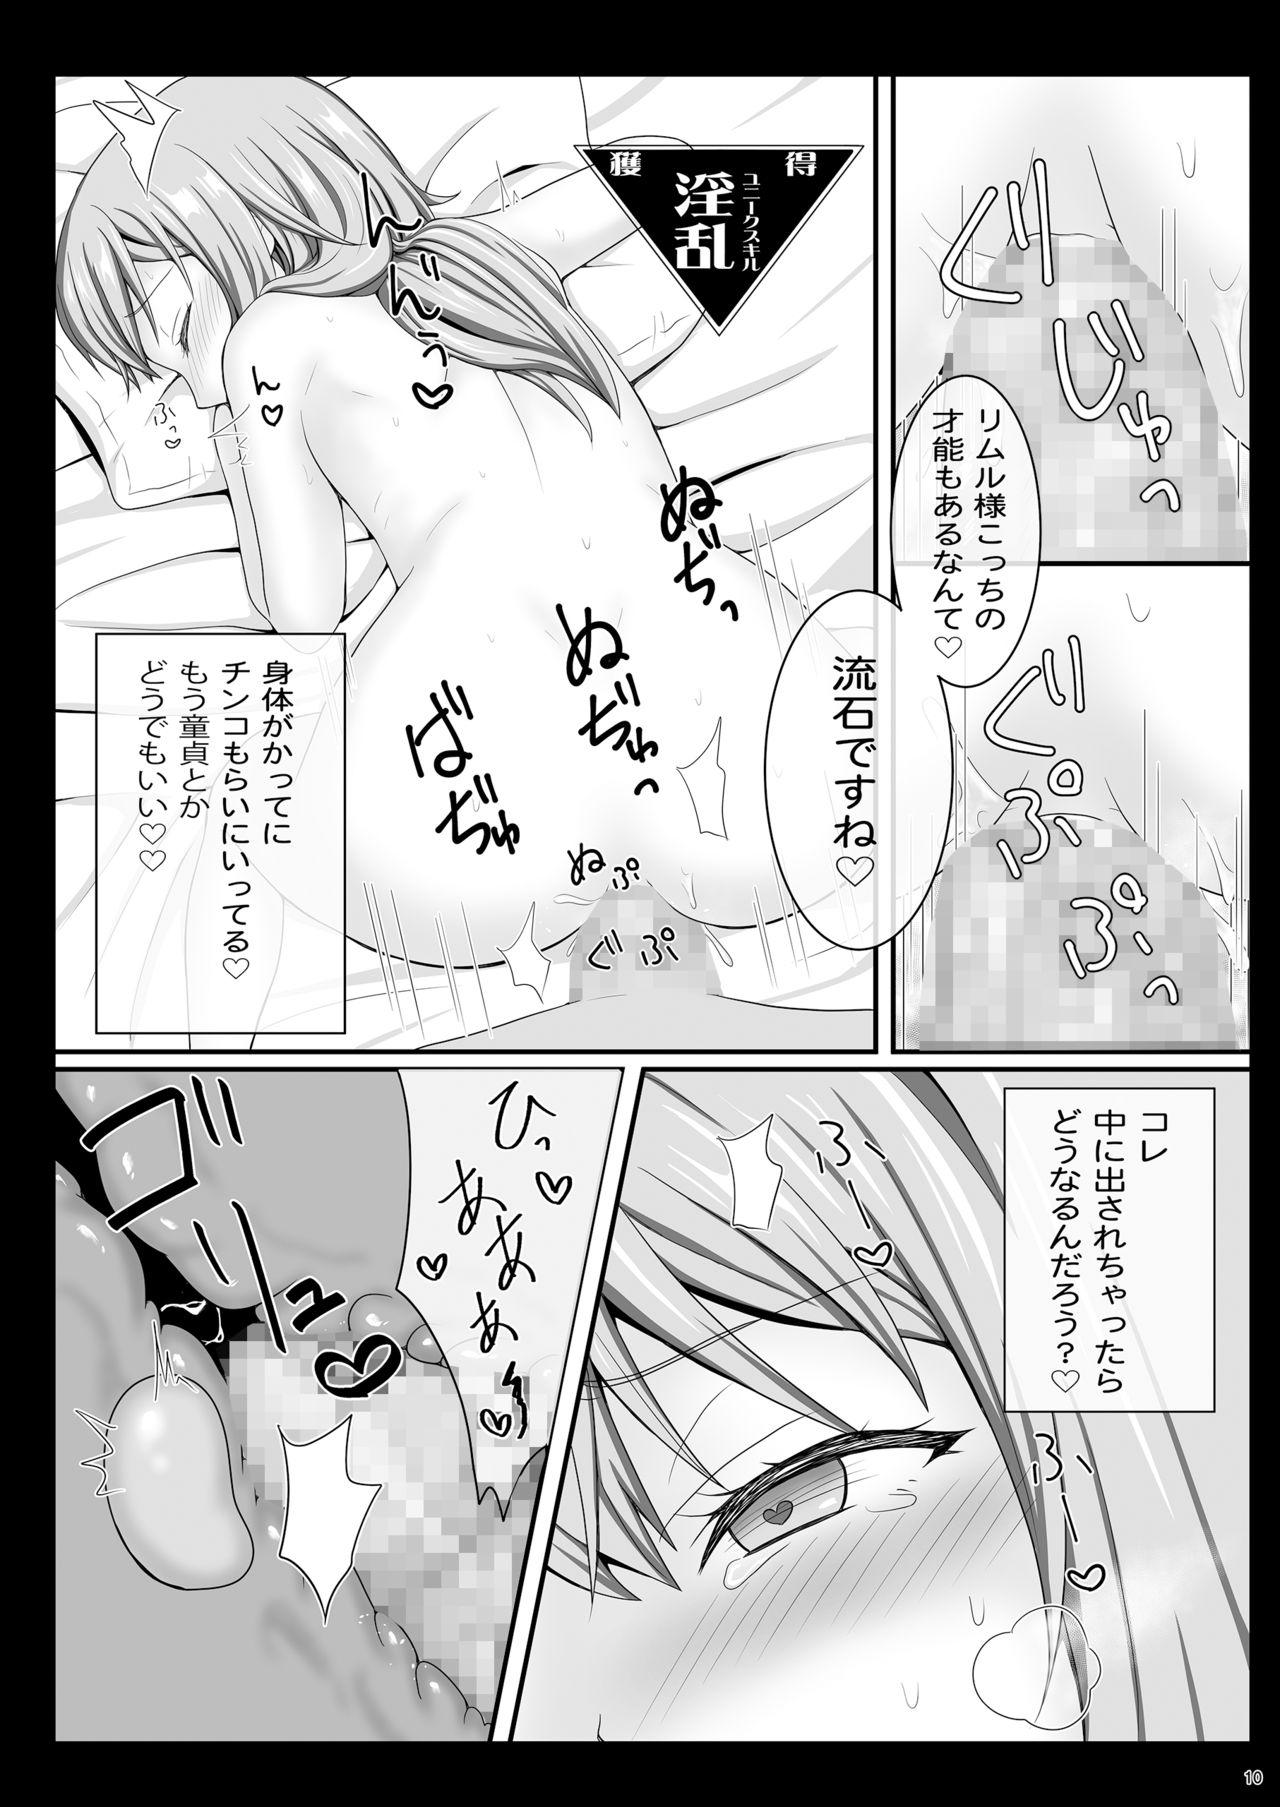 Grandmother Etchina Rimuru-sama No Matome - Tensei shitara slime datta ken Mommy - Page 9